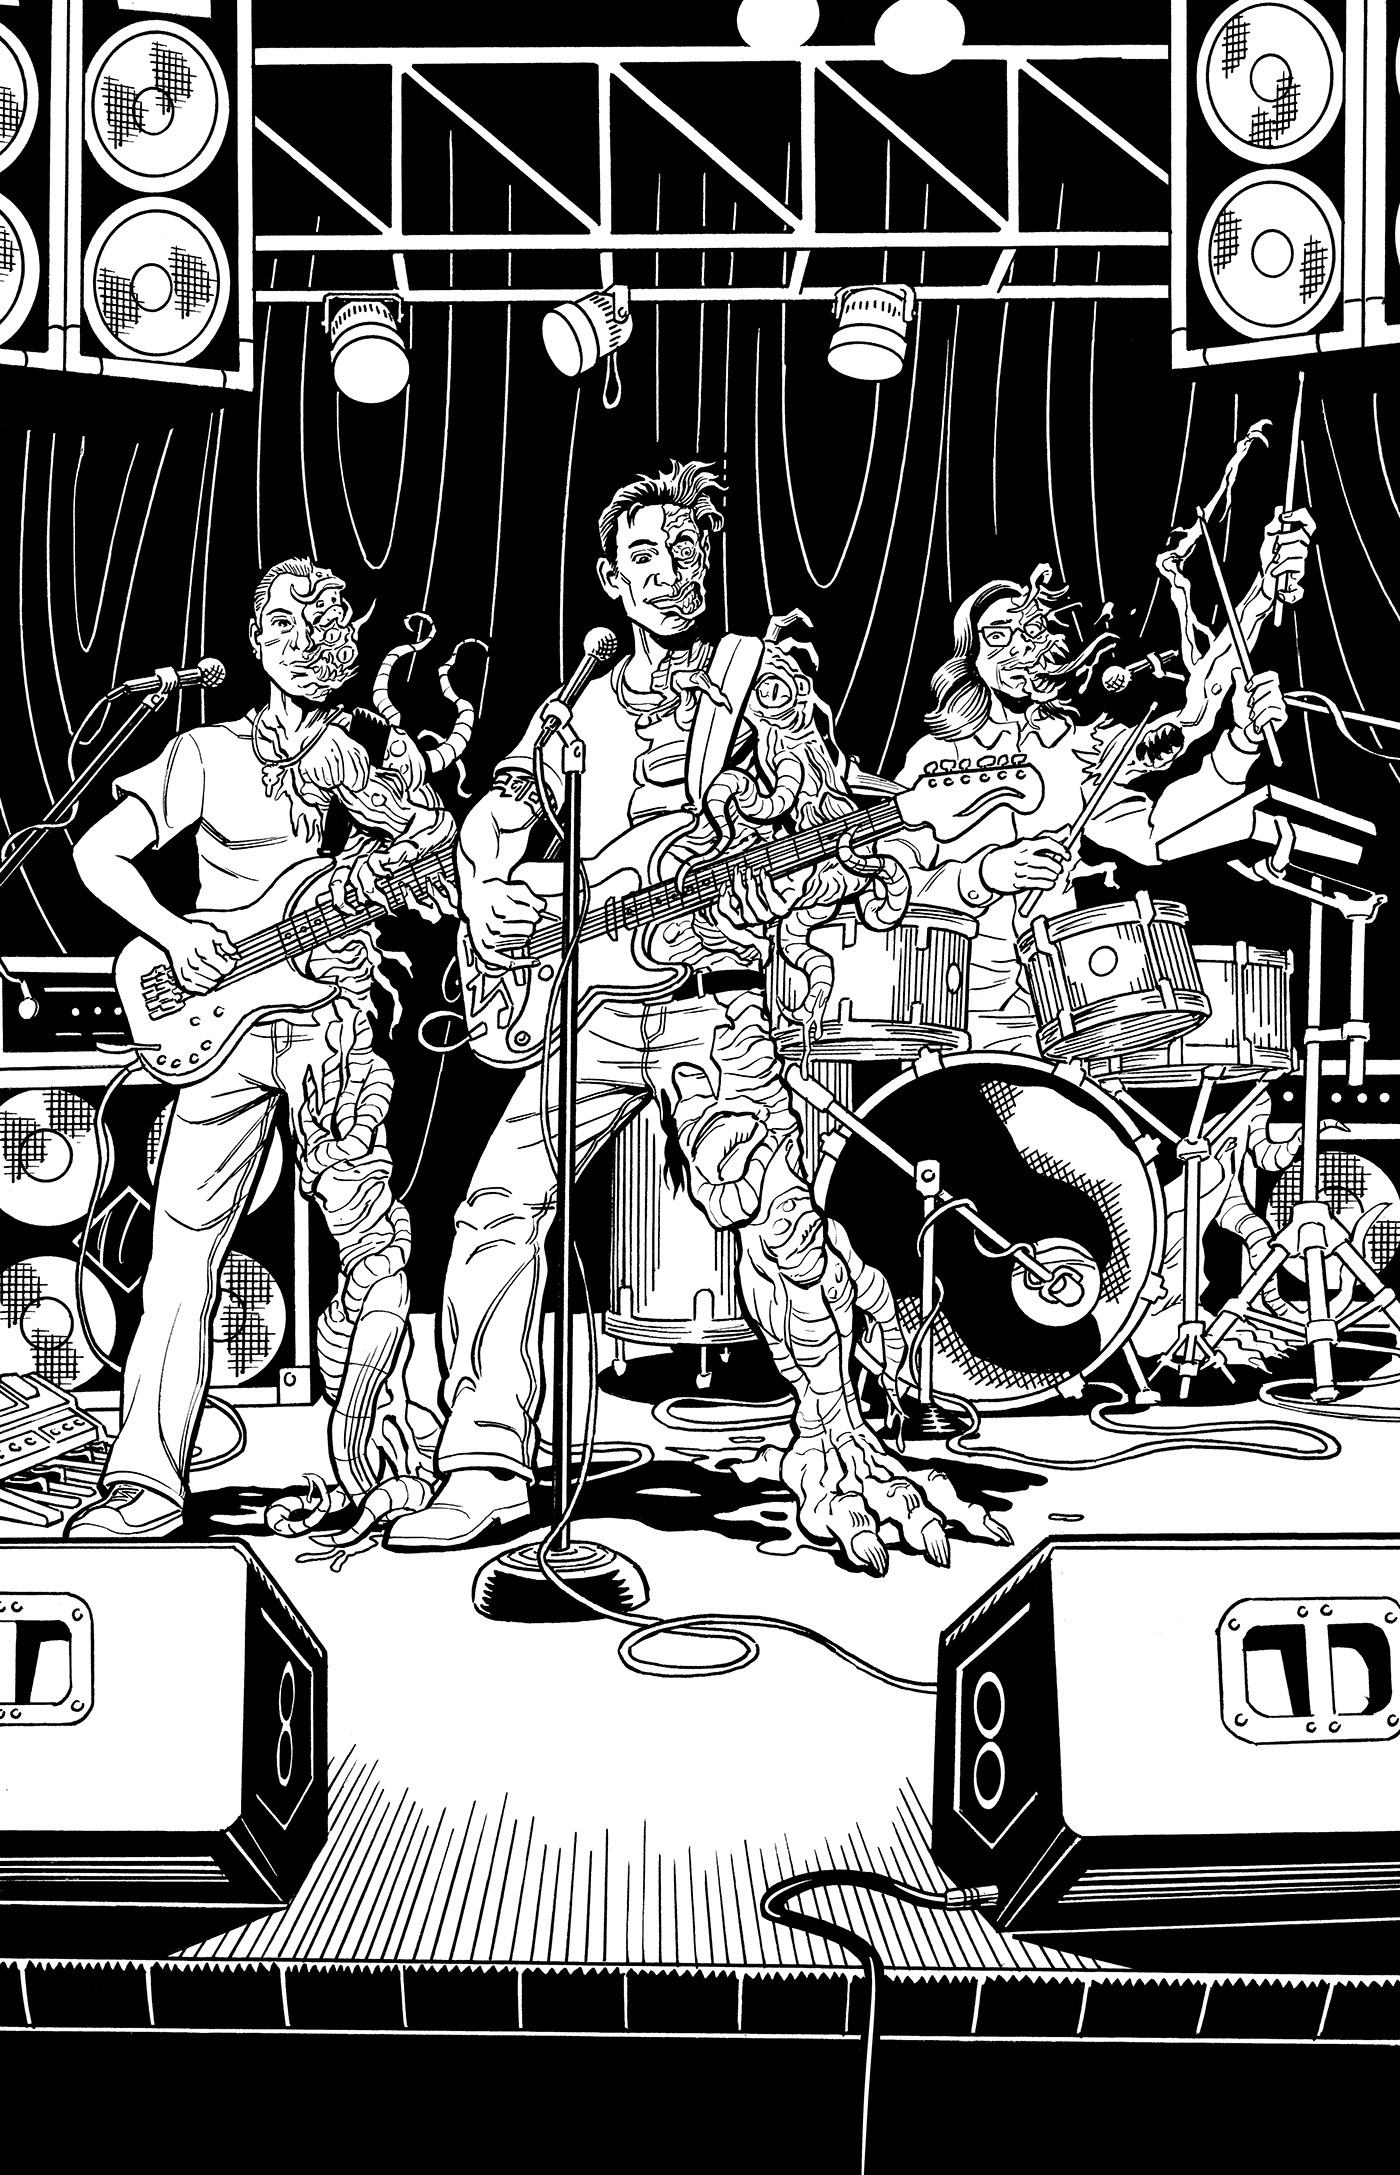 album cover band comic style concert Cover Art dorado Evil Side good vs evil ILLUSTRATION  monsters